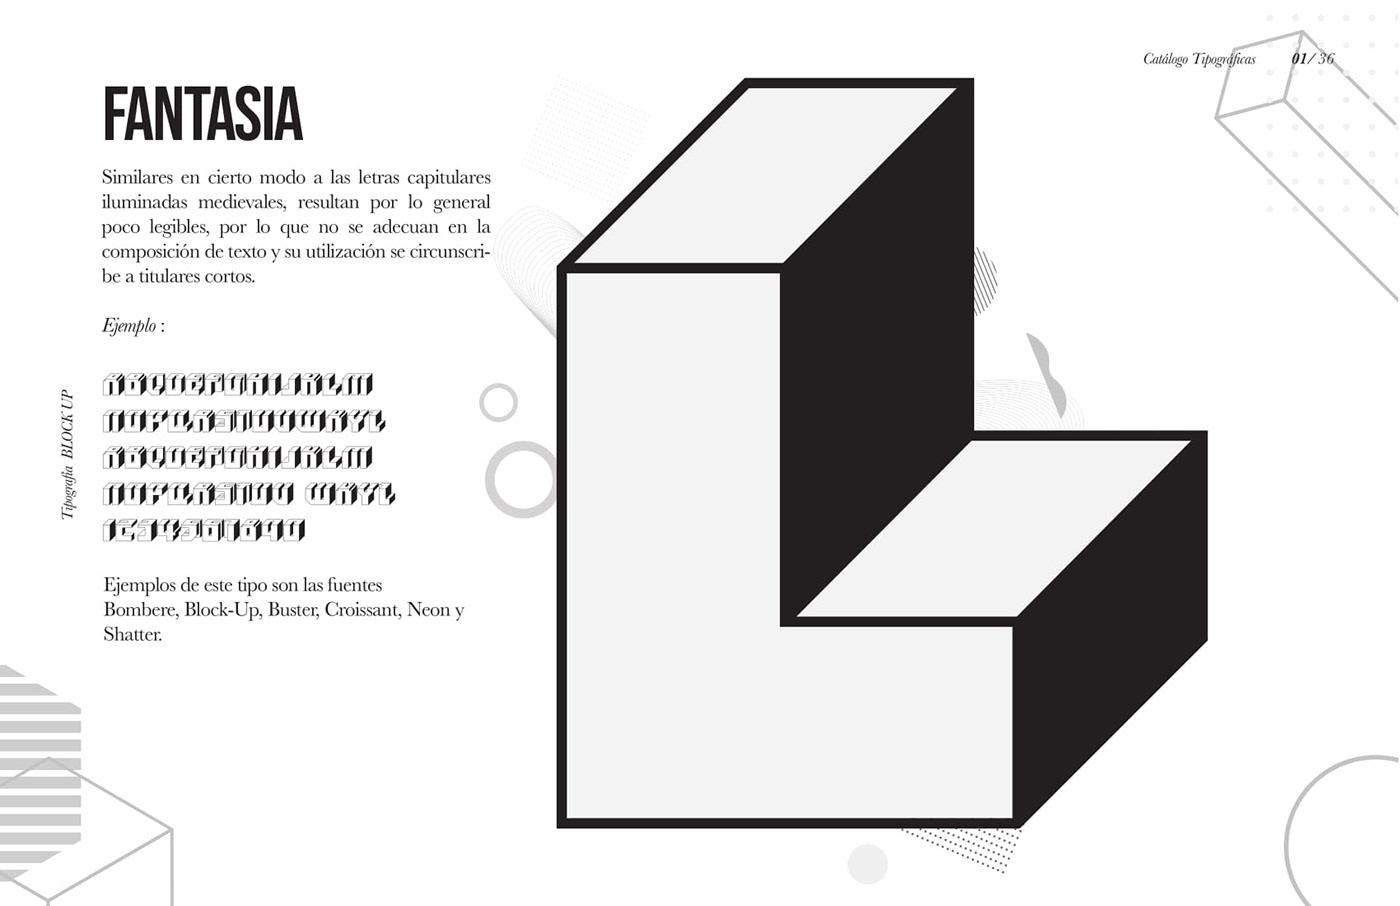 Diseño editorial Johnse rodriguez catalogo johnse Catálogo tipográfico